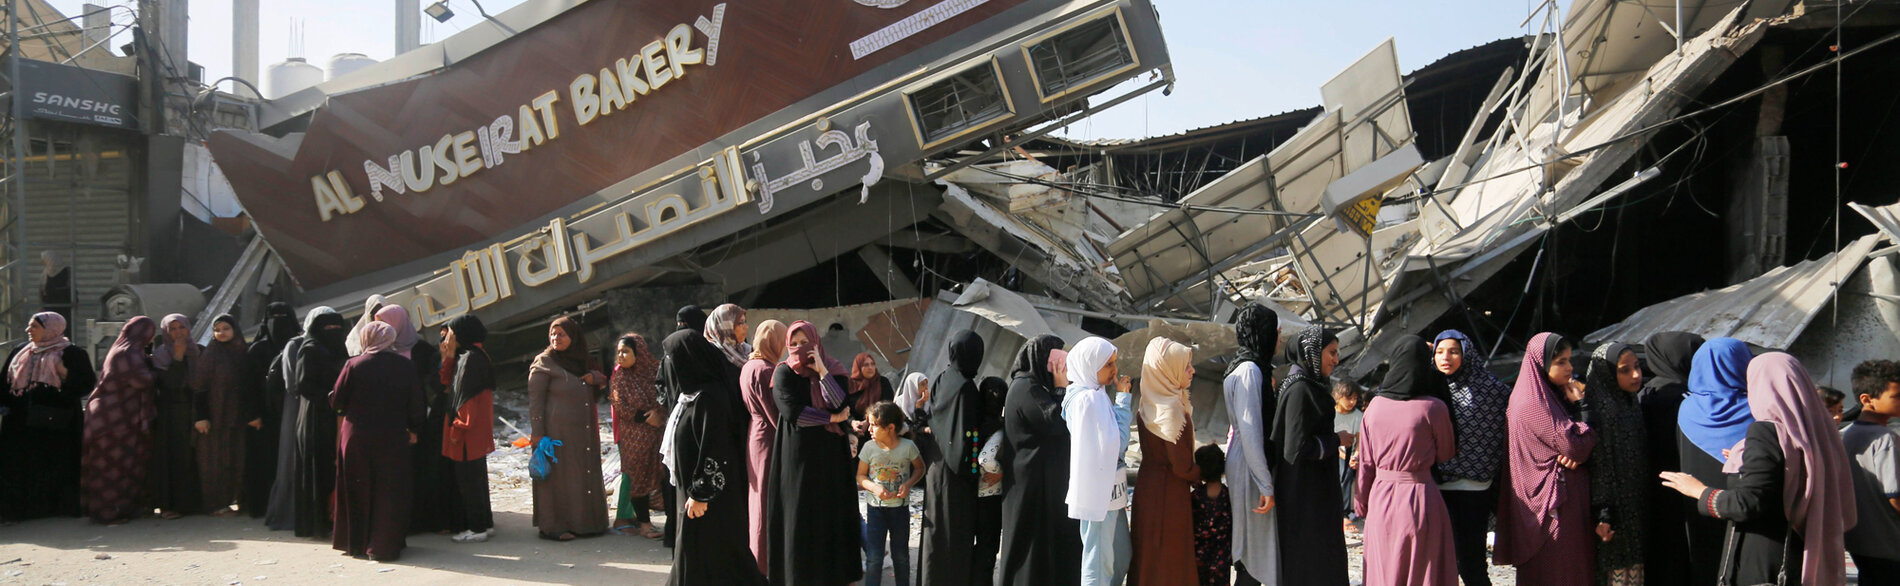 نساء وفتيات يقفن في طوابير أمام مخبز مدمر للحصول على الخبز في قطاع غزة.  قُصف 11 مخبزًا ودُمر منذ 7 تشرين الأول/أكتوبر. وفي جنوب غزة، لا تملك المطحنة الوحيدة العاملة القدرة على طحن القمح بسبب انقطاع الكهرباء والوقود. تصوير الأونروا